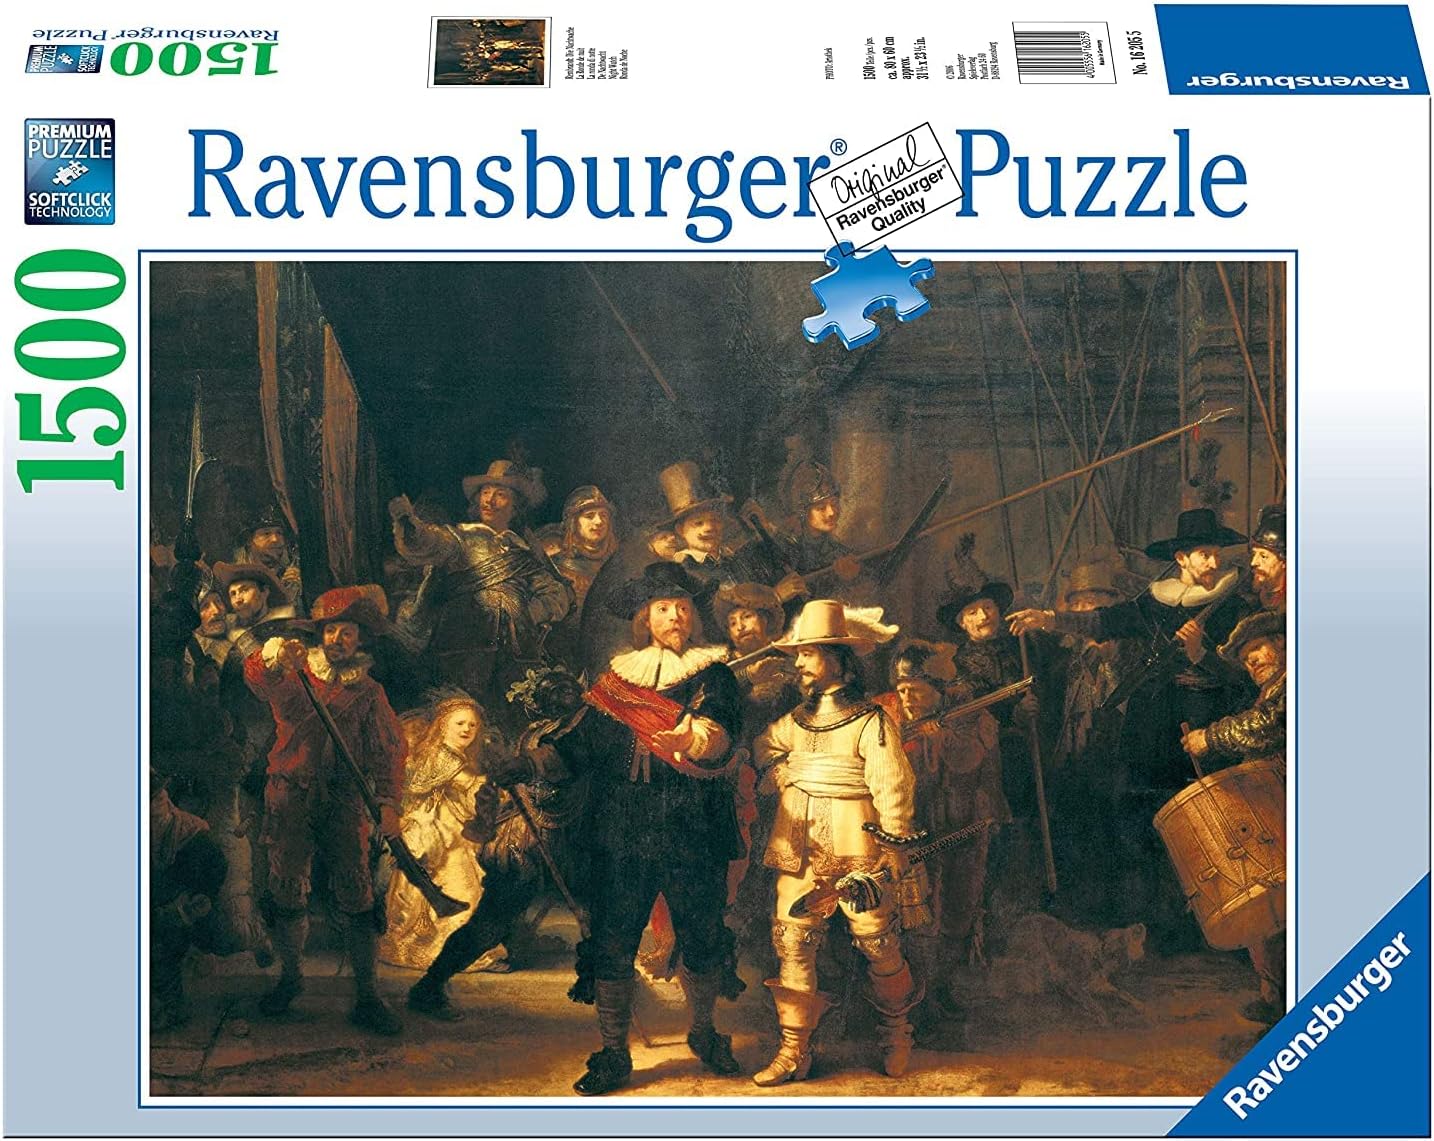 Ravensburger Rembrandt: Die Nachtwache (Night Watch) 1500 Piece Puzzle - image 1 of 2